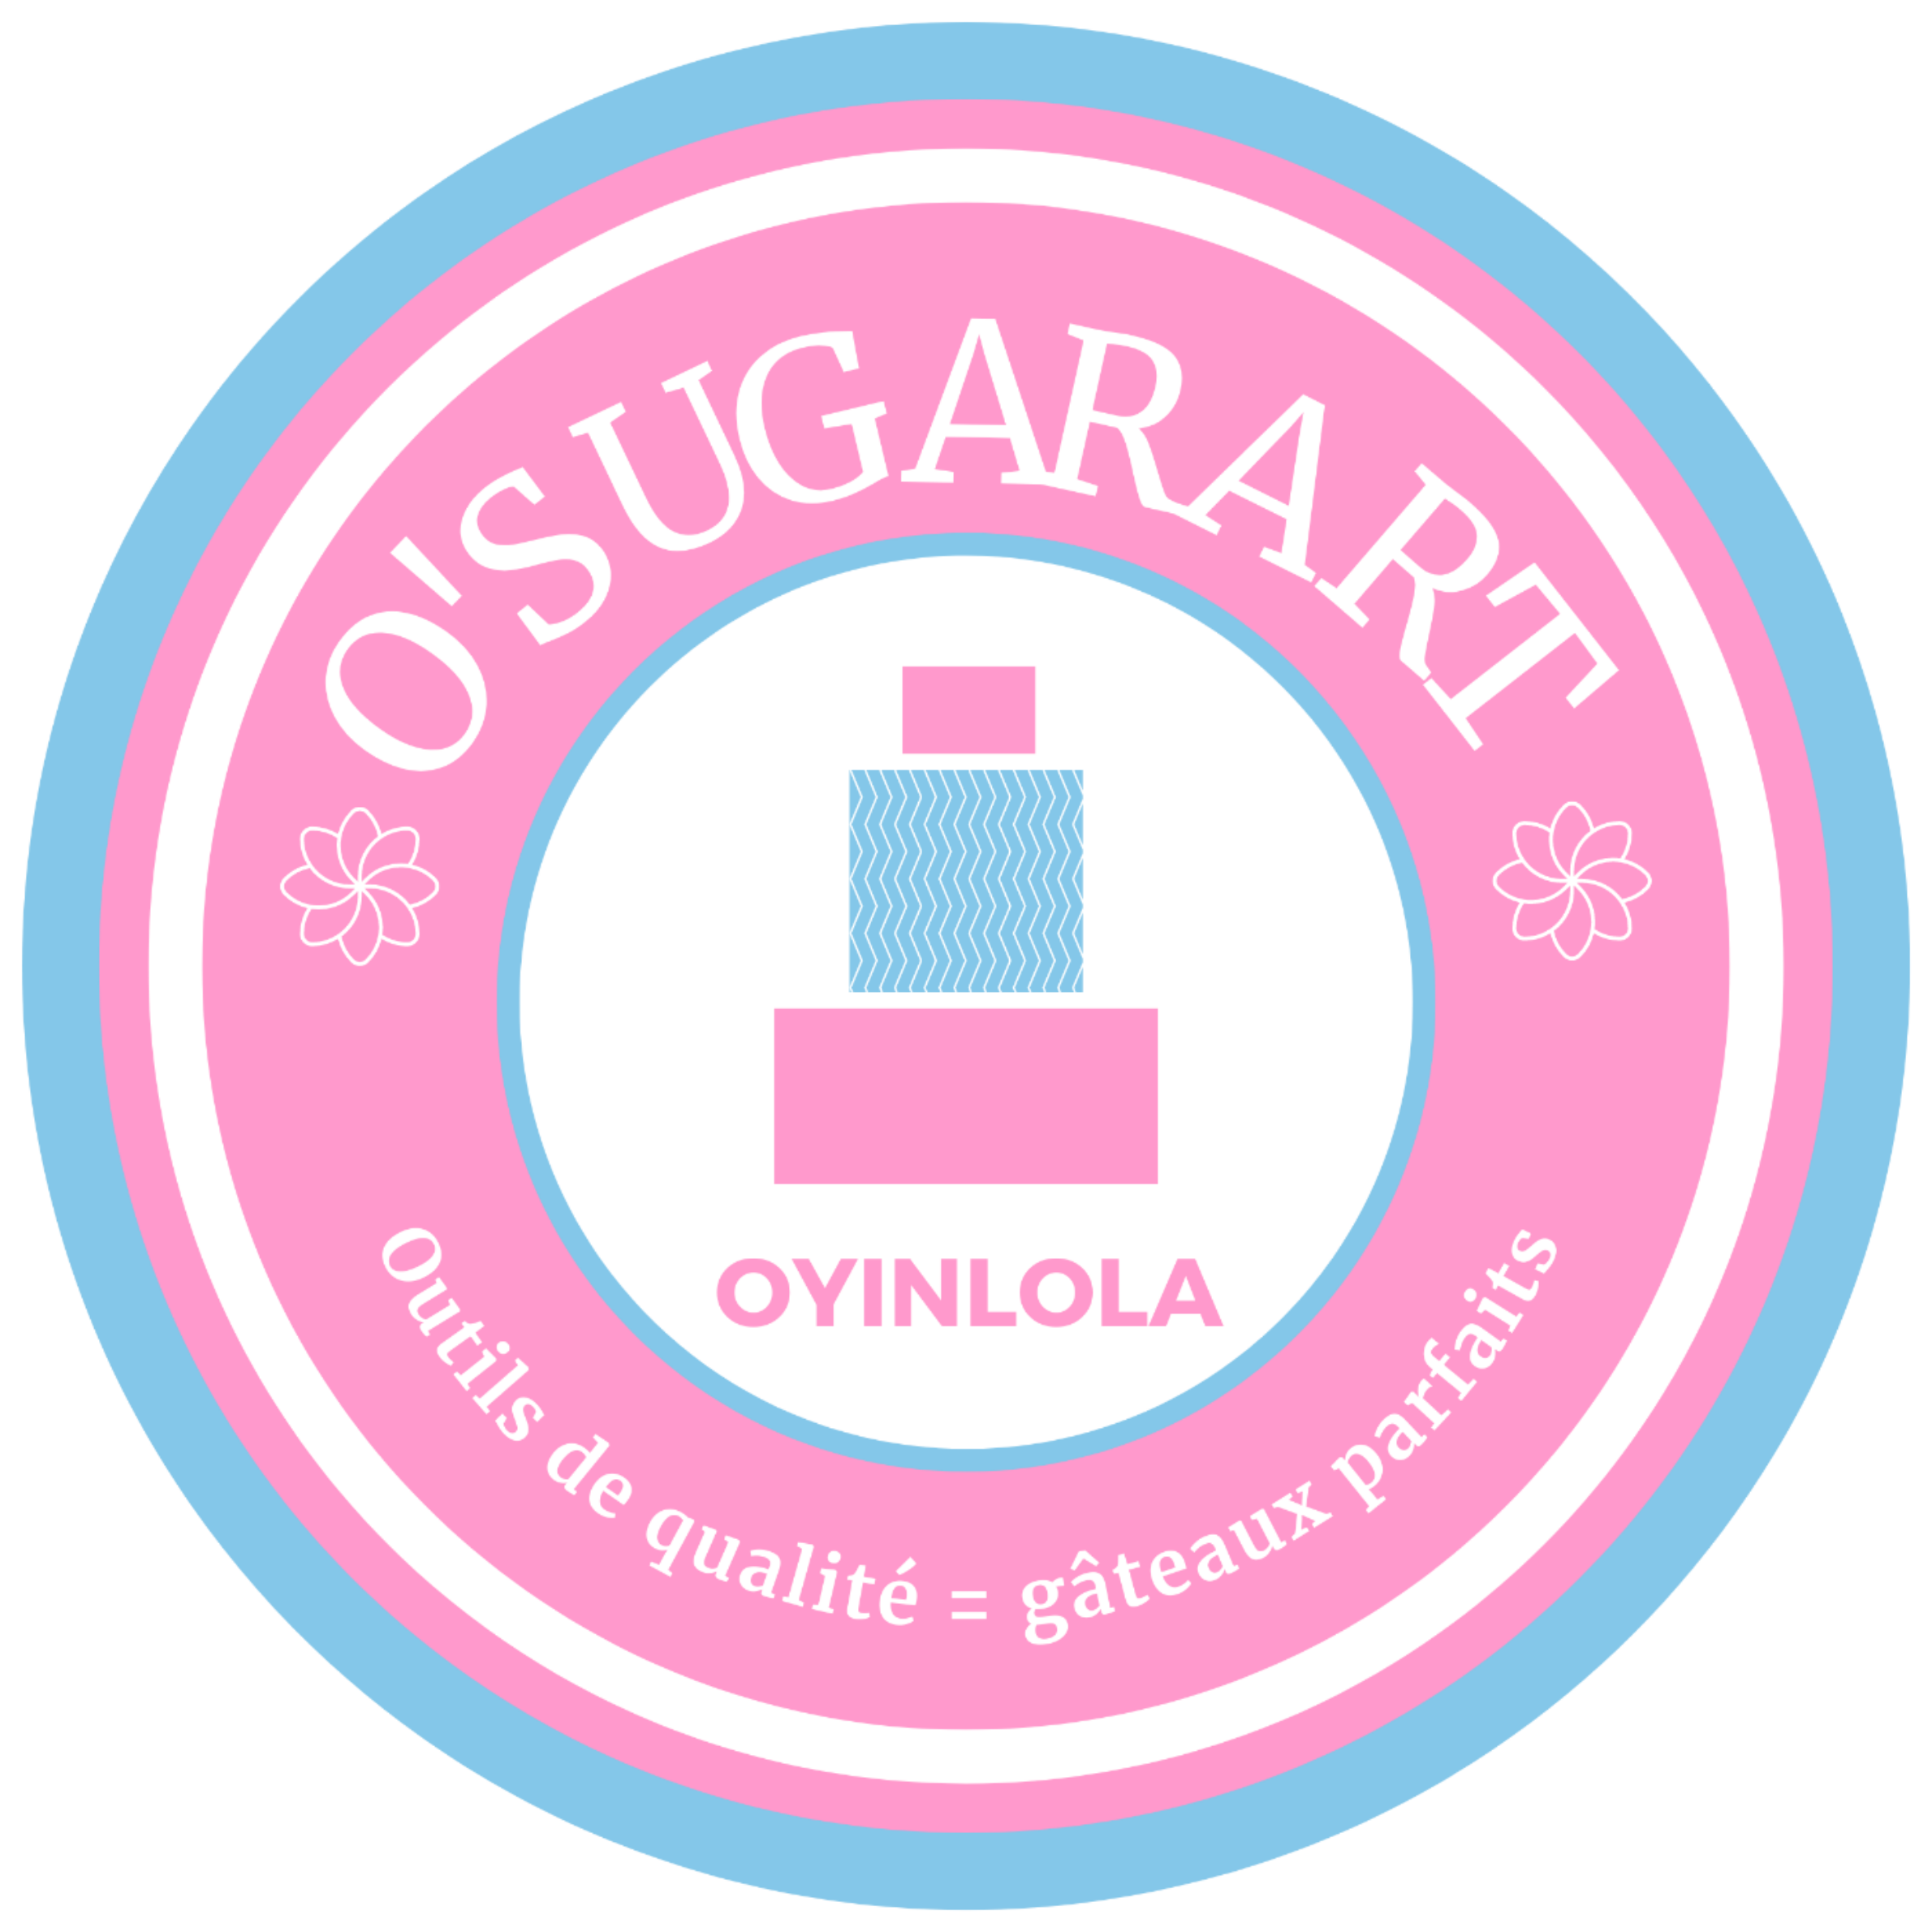 Achetez vos matériaux de Cake Design et pâtisserie de qualité chez O'SugarArt